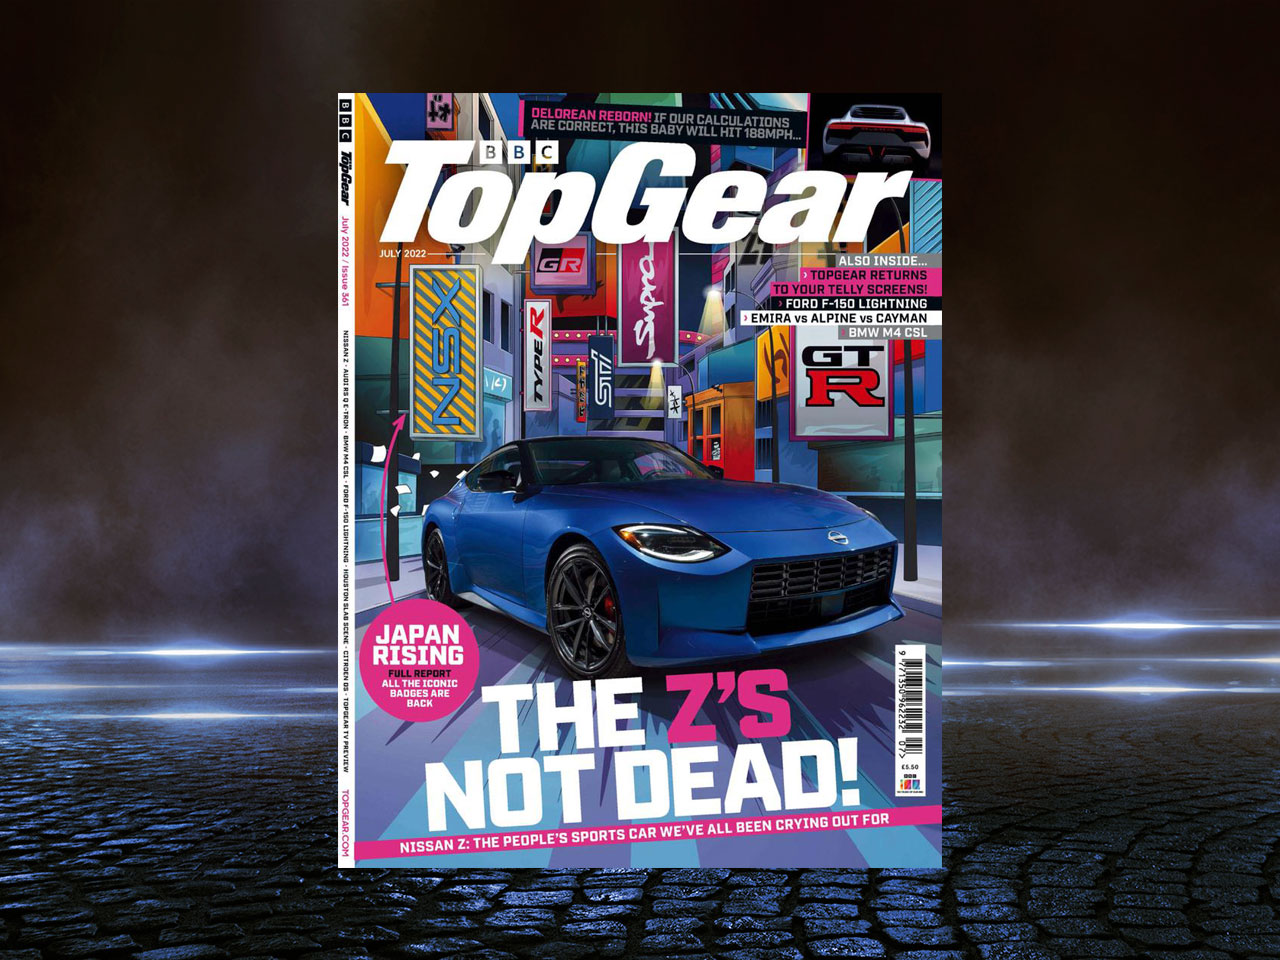 Tilaa BBC Top Gear lehti tarjoushintaan